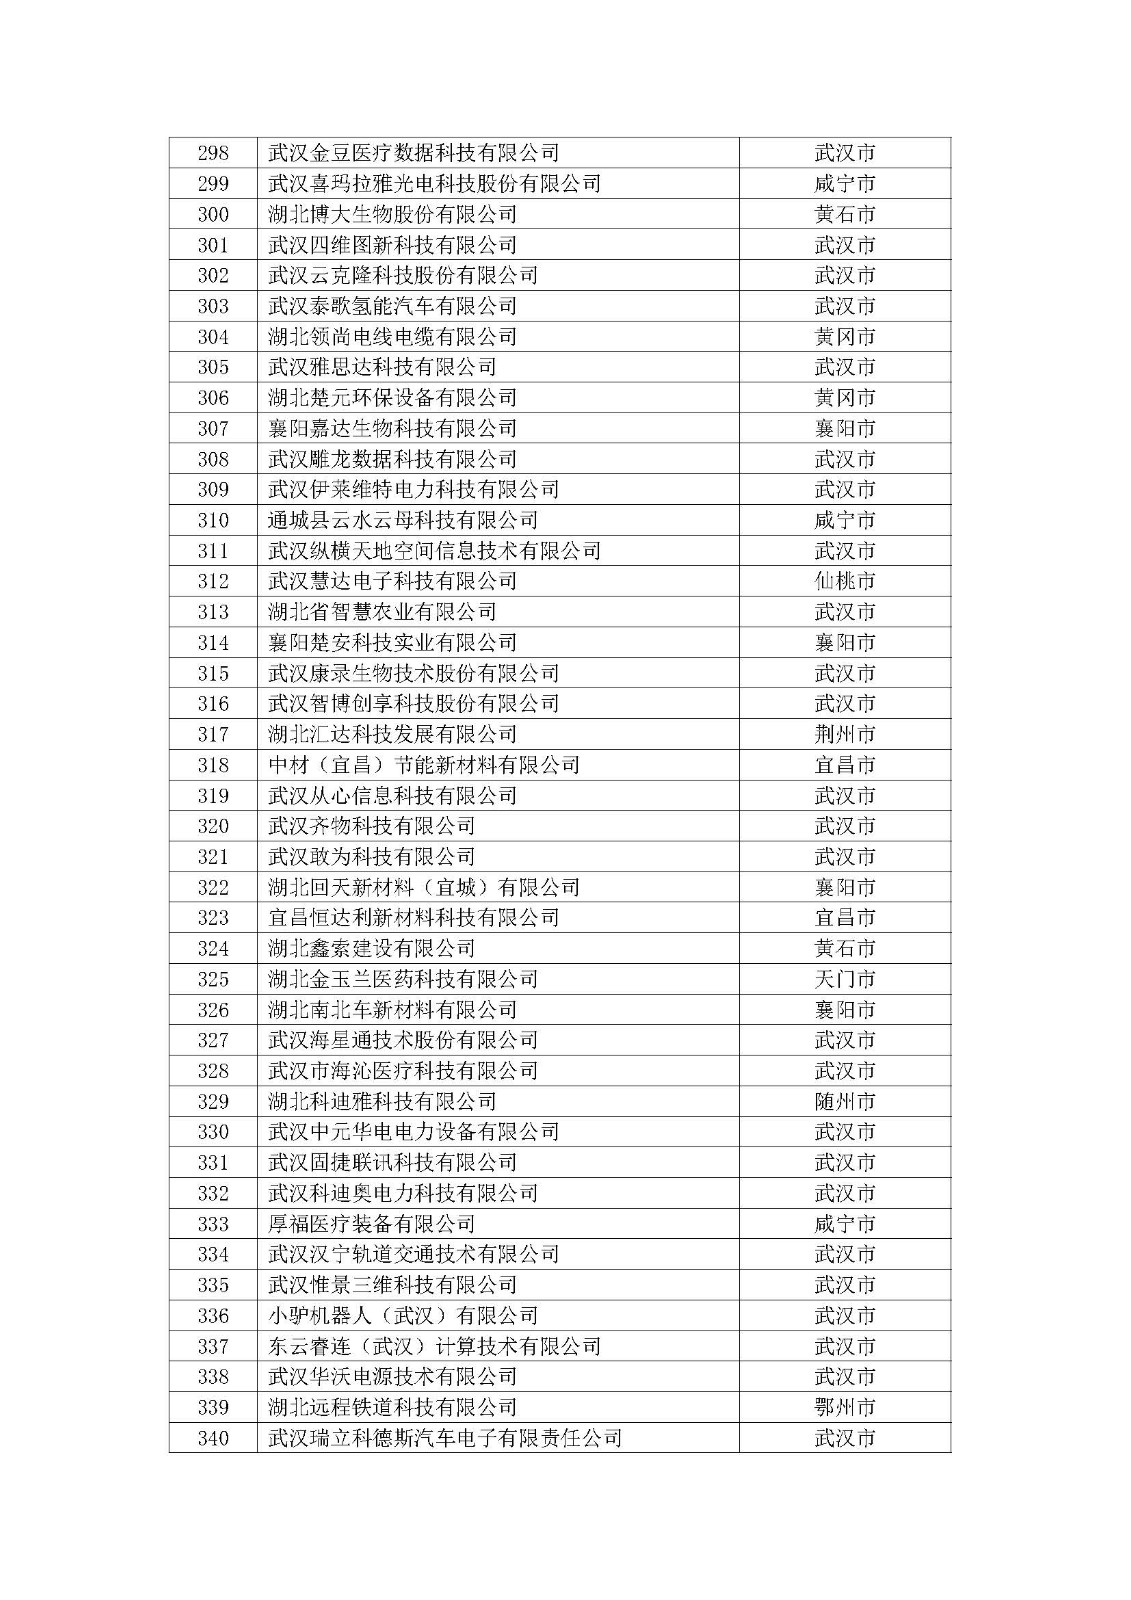 第一批拟入库湖北省科创“新物种”企业名单_页面_09.jpg